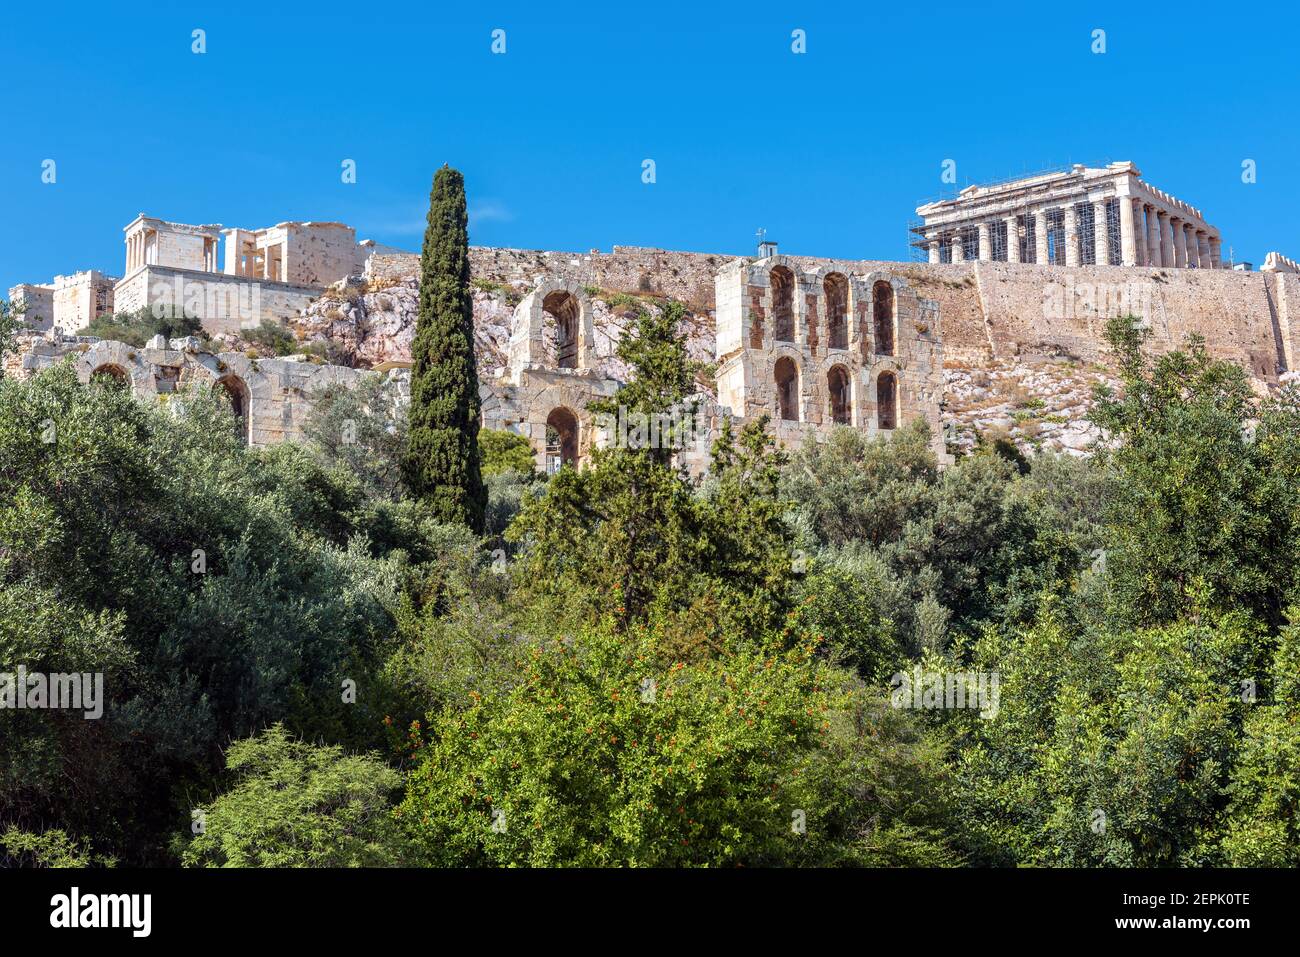 Akropolis von Athen, Griechenland. Landschaftlich schöner Blick auf den Herodes Odeon und den Parthenon Tempel. Dieses Hotel ist das Wahrzeichen Athens. Landschaft der antiken griechischen Ruinen, Stockfoto